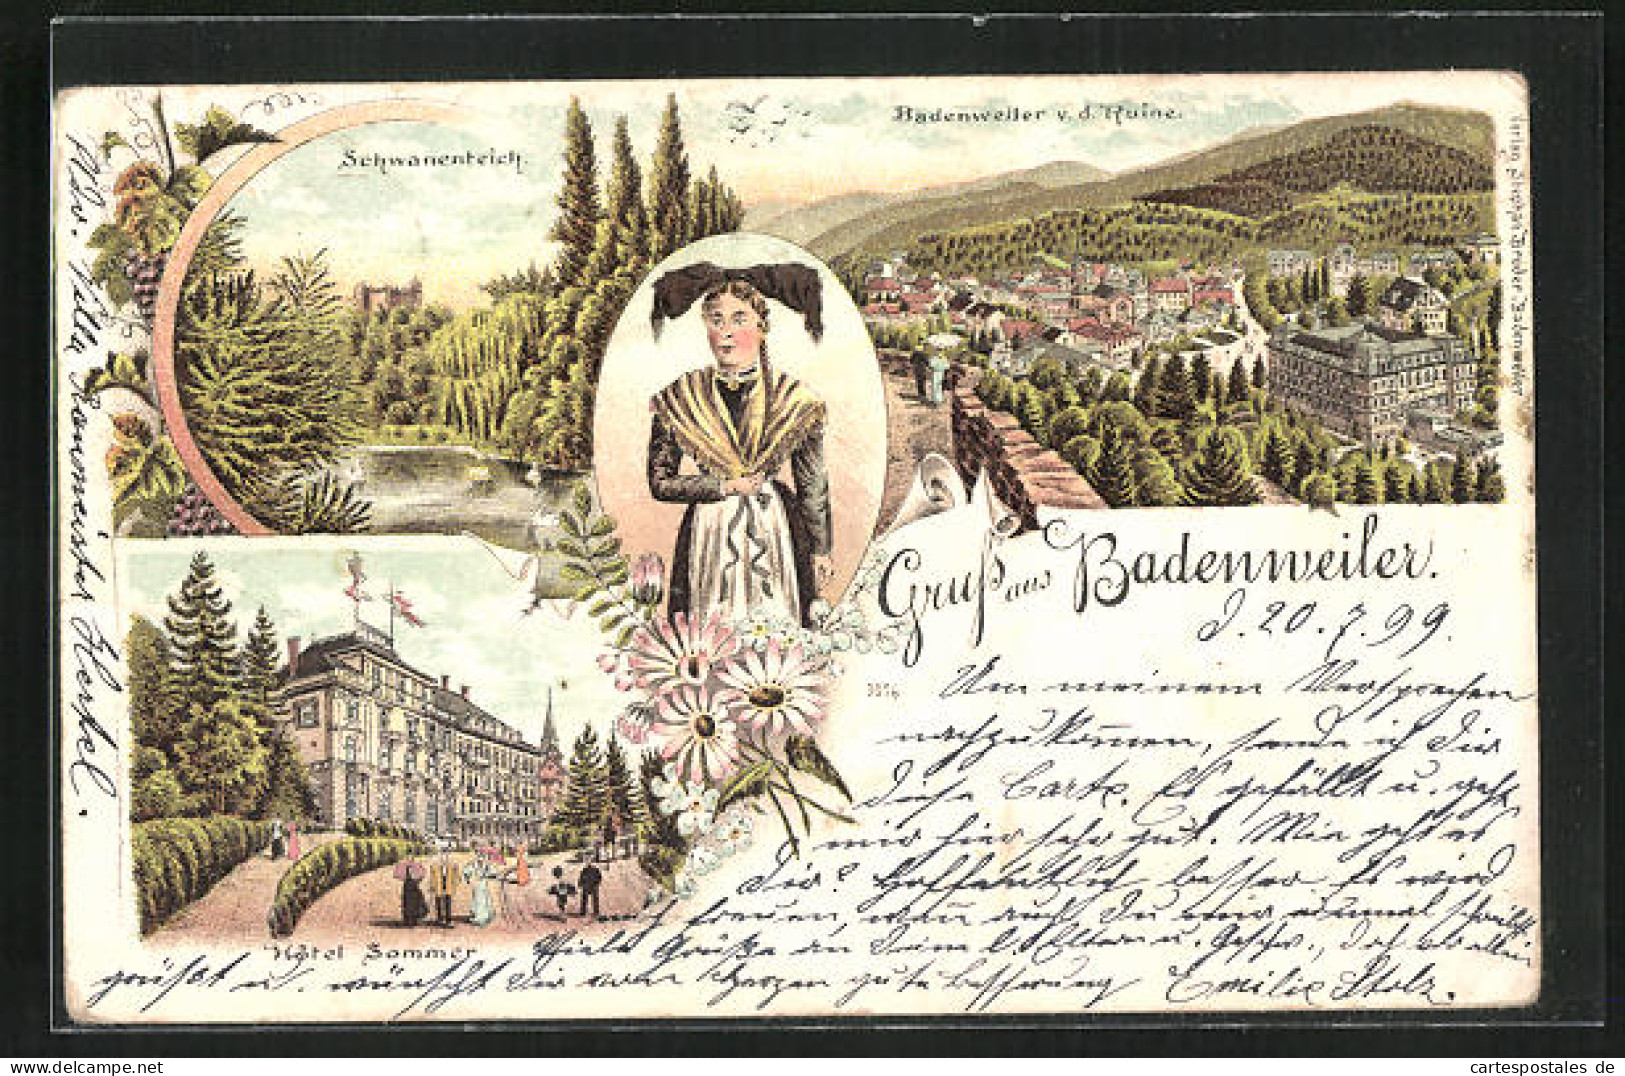 Lithographie Badenweiler, Hotel Sommer, Totalansicht V. D. Ruine, Schwanenteich  - Badenweiler